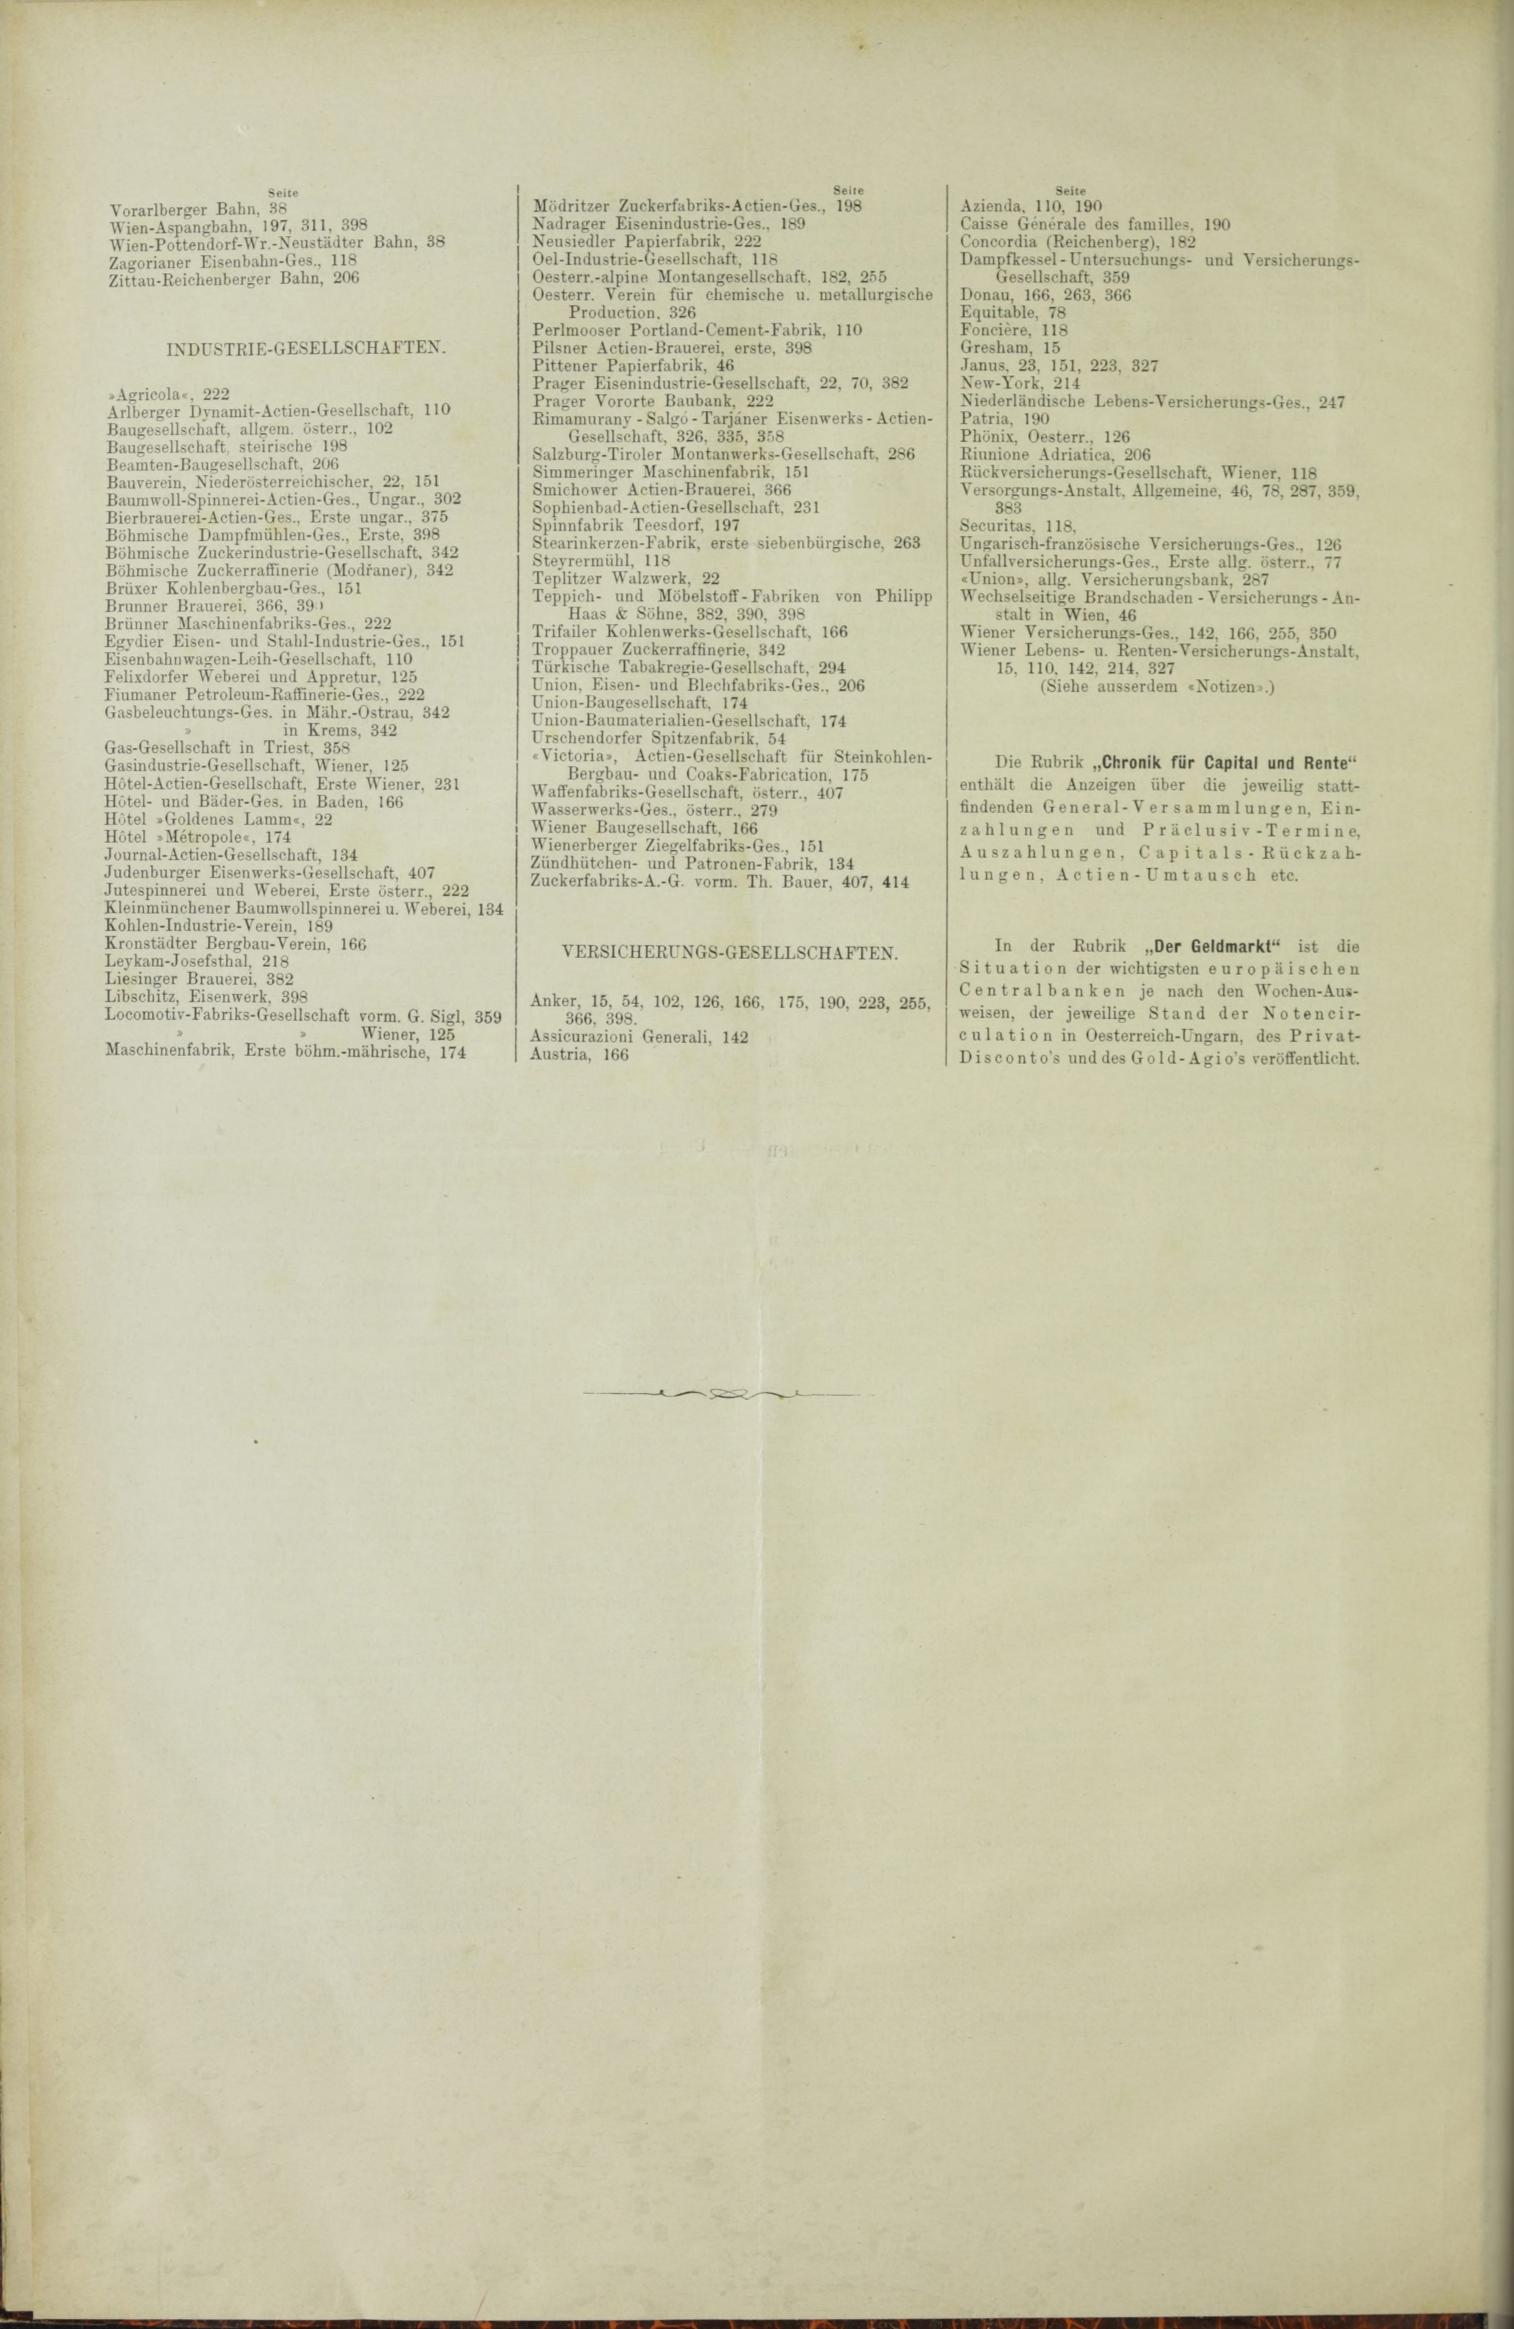 Der Tresor 23.09.1886 - Seite 12